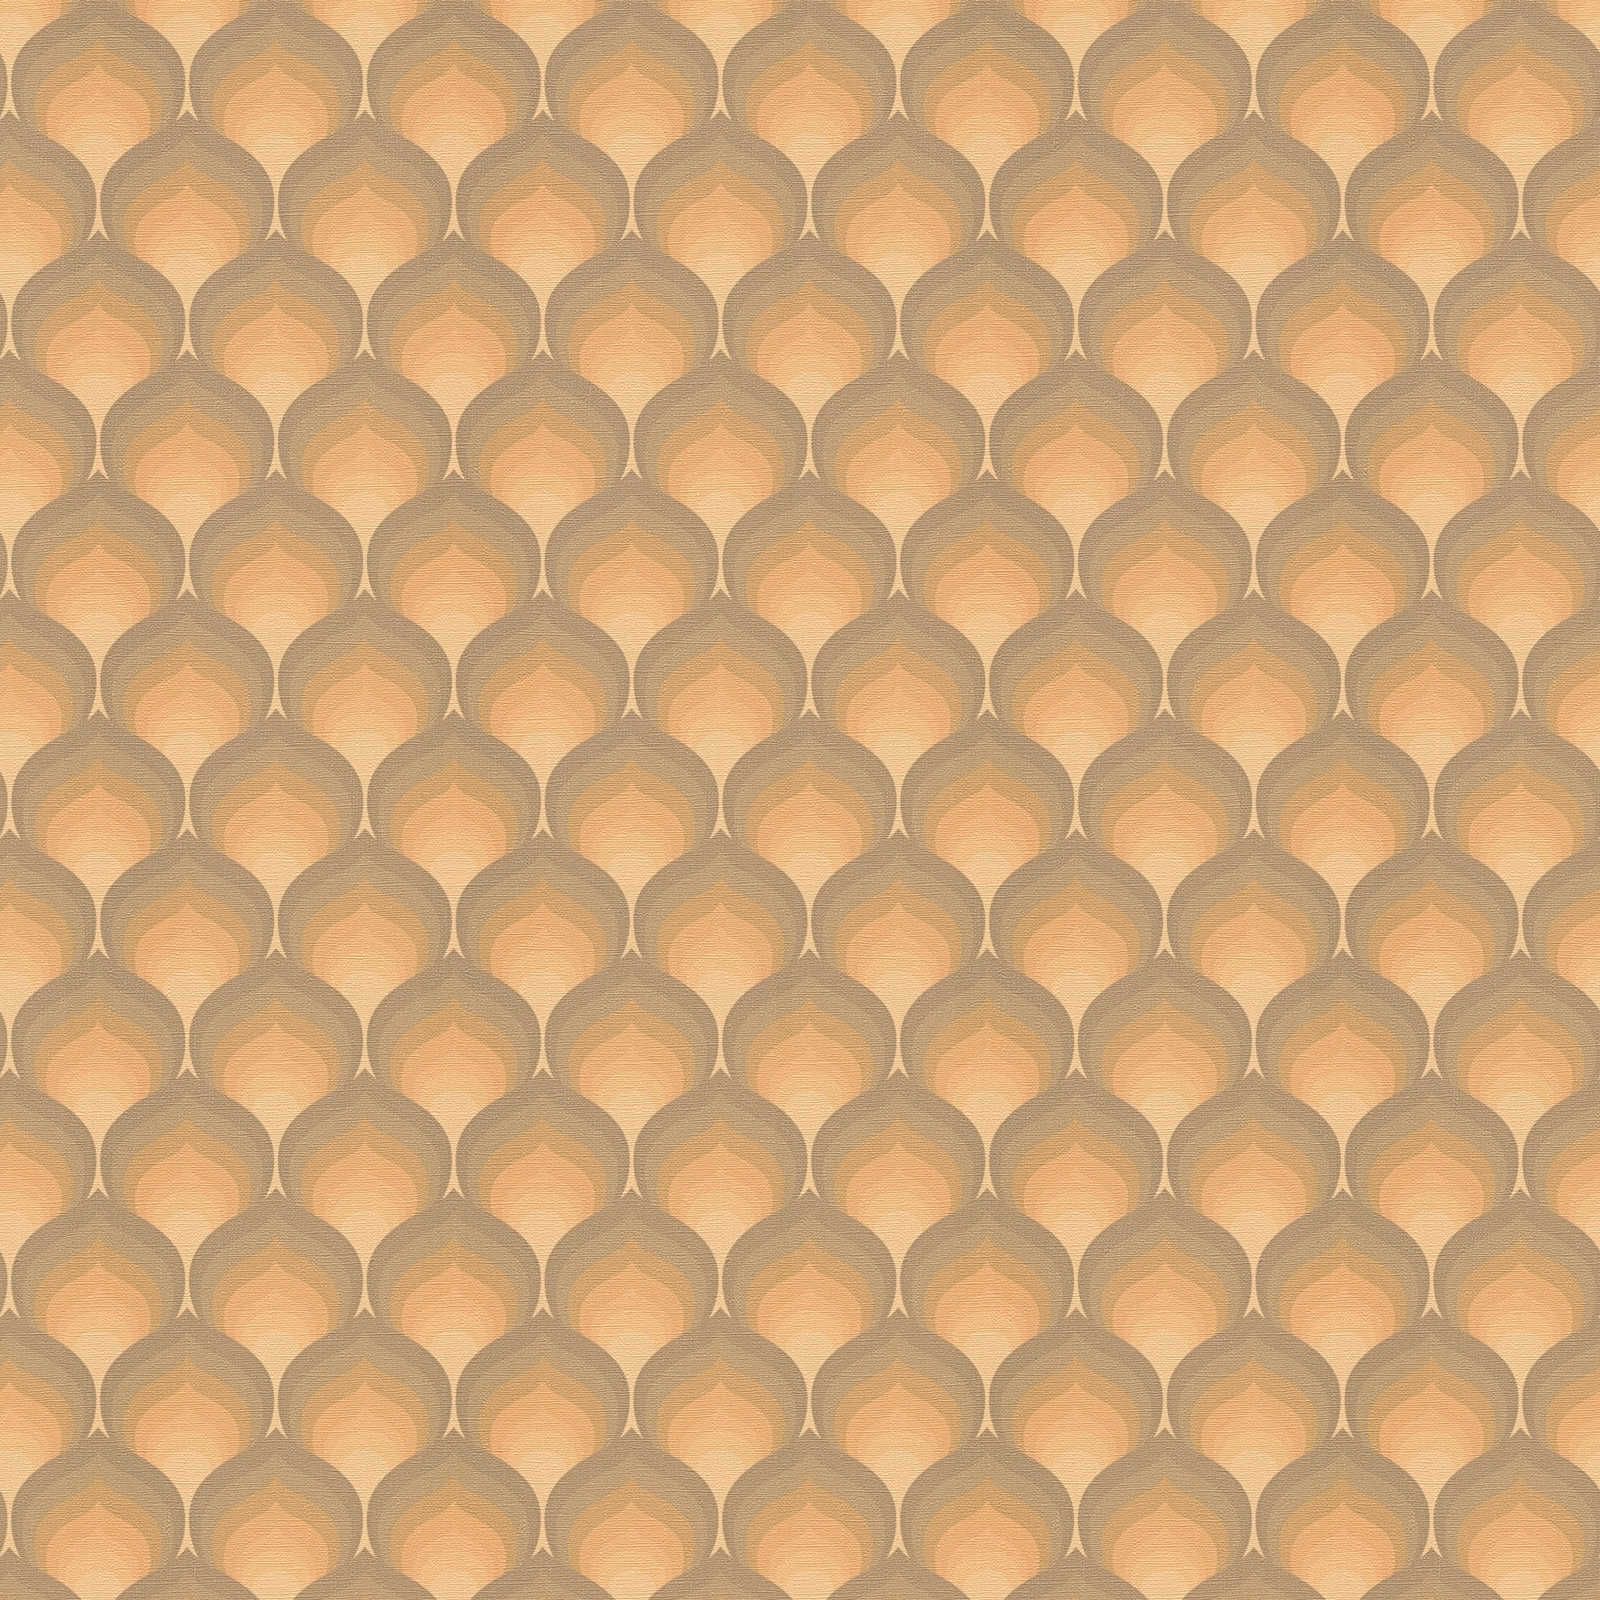             papier peint en papier rétro avec motif écailles structuré - marron, jaune, orange
        